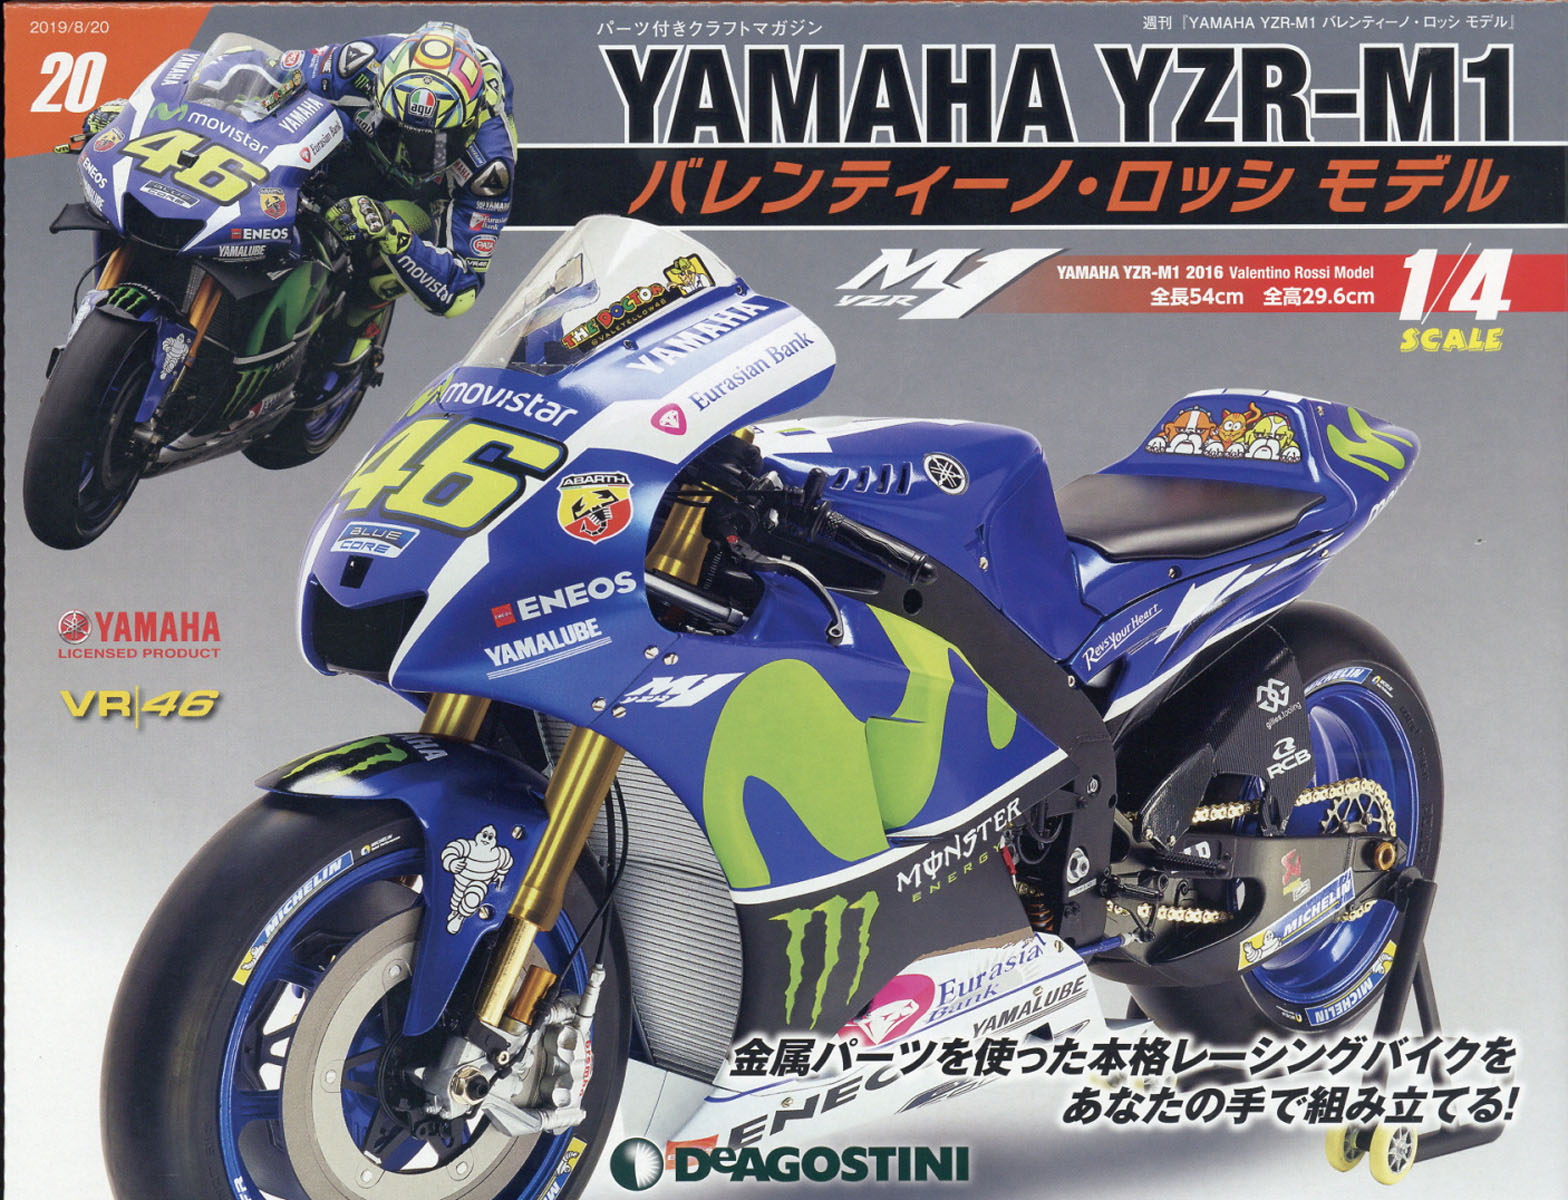 週刊 YAMAHA YZR-1 バレンティーノ・ロッシ モデル 2019年 8/20号 [雑誌]